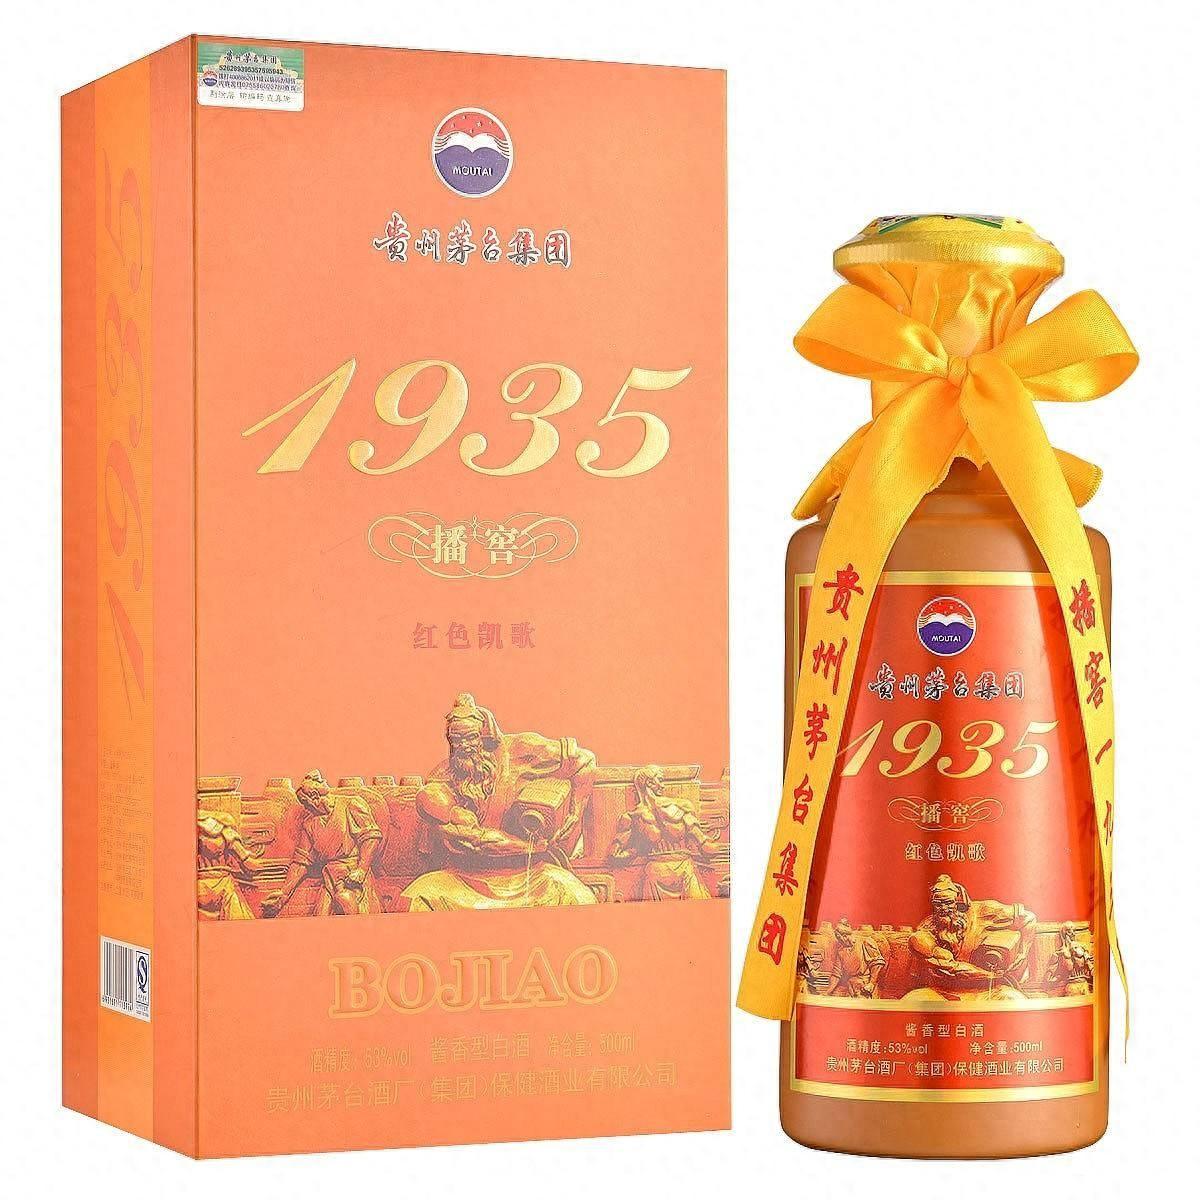 播窖1935红色凯歌：经典传承，高端收藏级酱香白酒